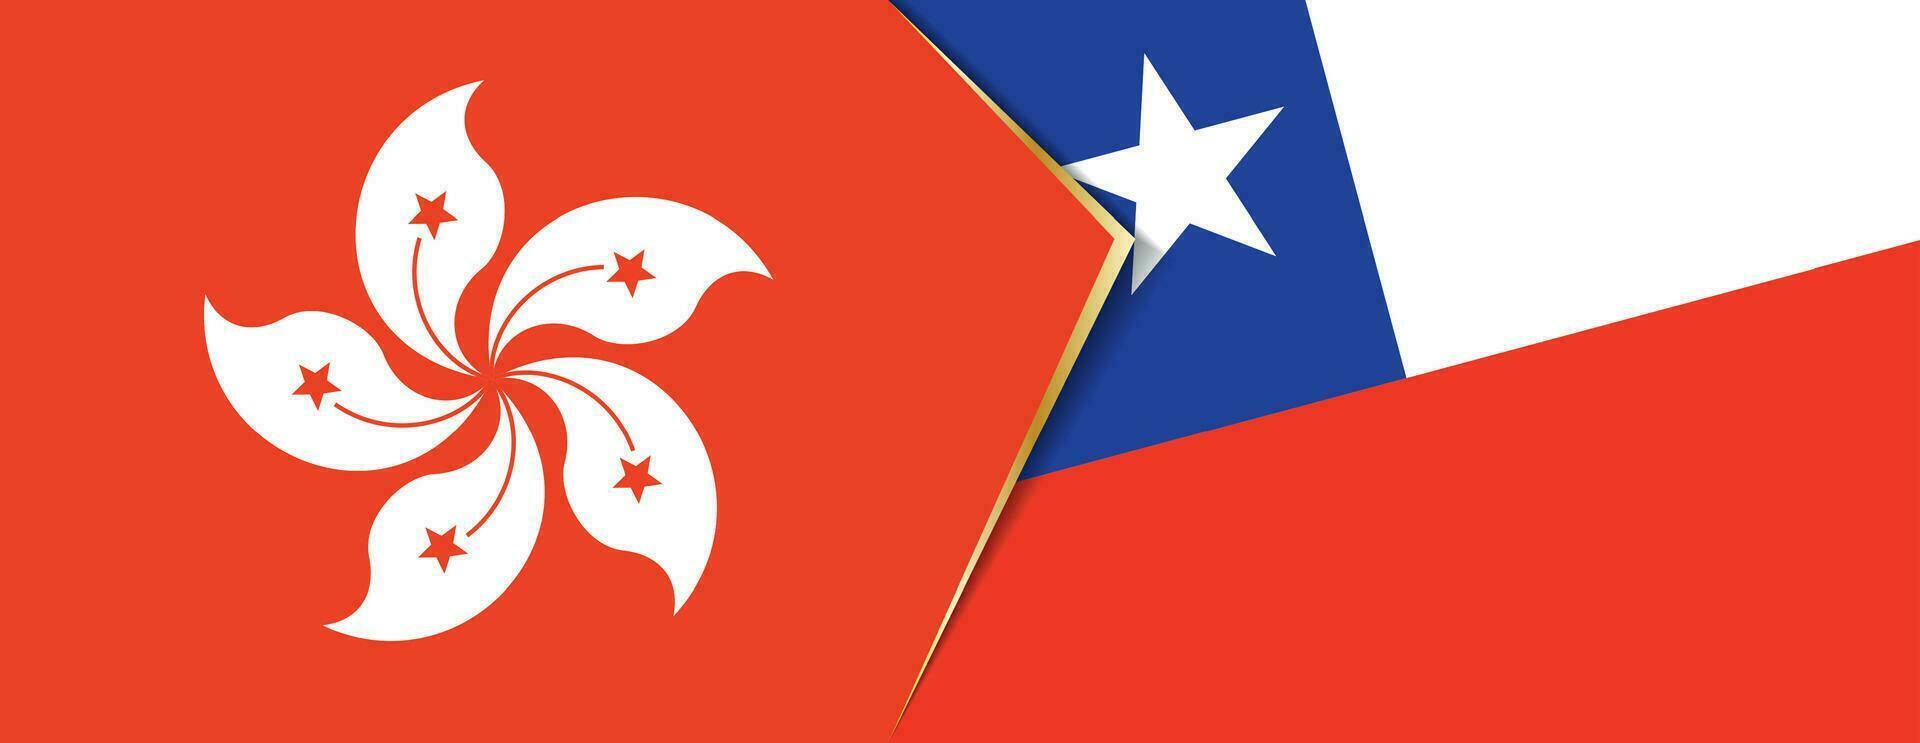 Hong kong und Chile Flaggen, zwei Vektor Flaggen.